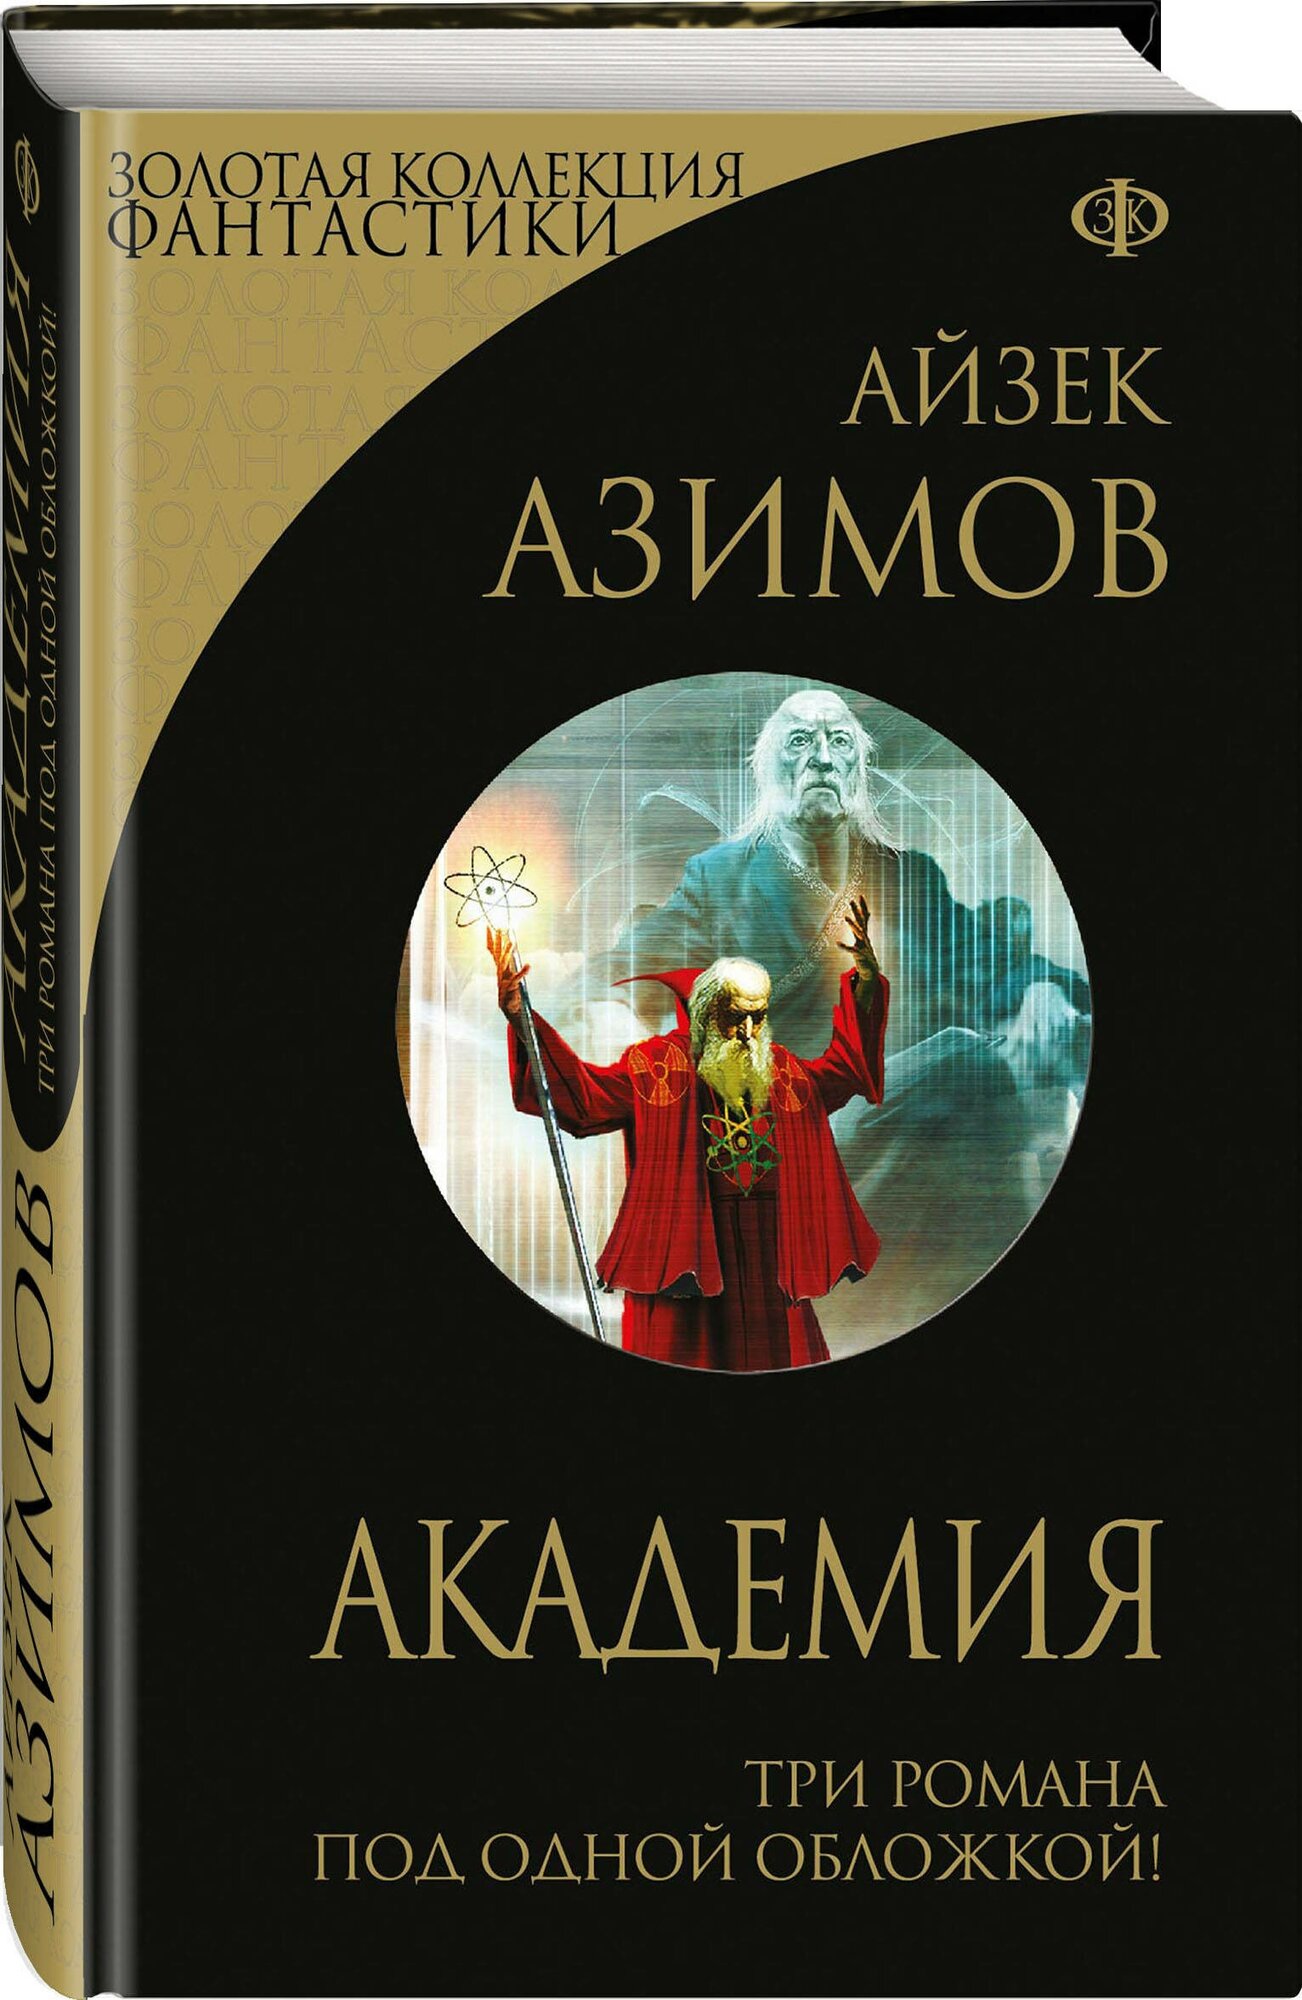 Академия Книга Азимов Айзек 16+